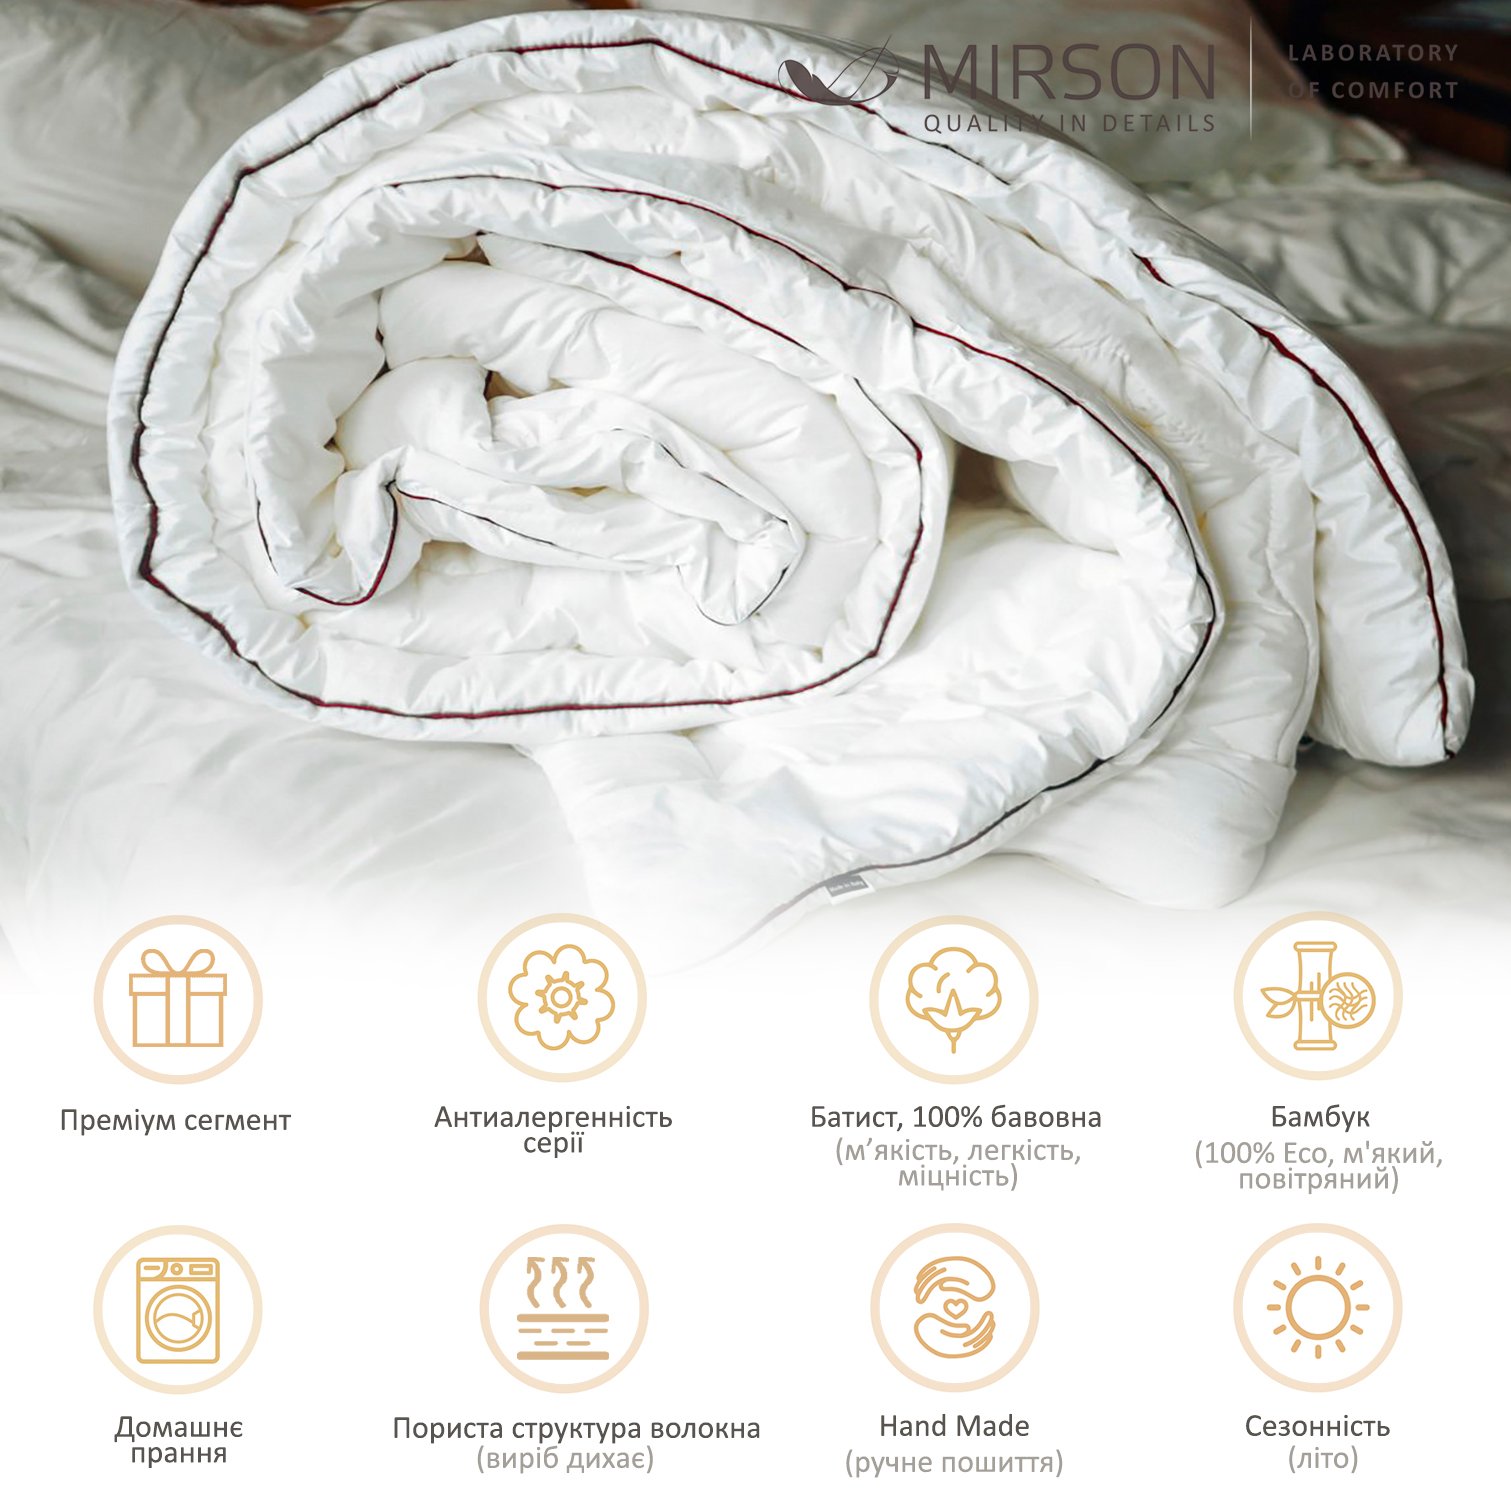 Одеяло бамбуковое MirSon Deluxe Hand Made №0444, летнее, 155x215 см, белое - фото 5